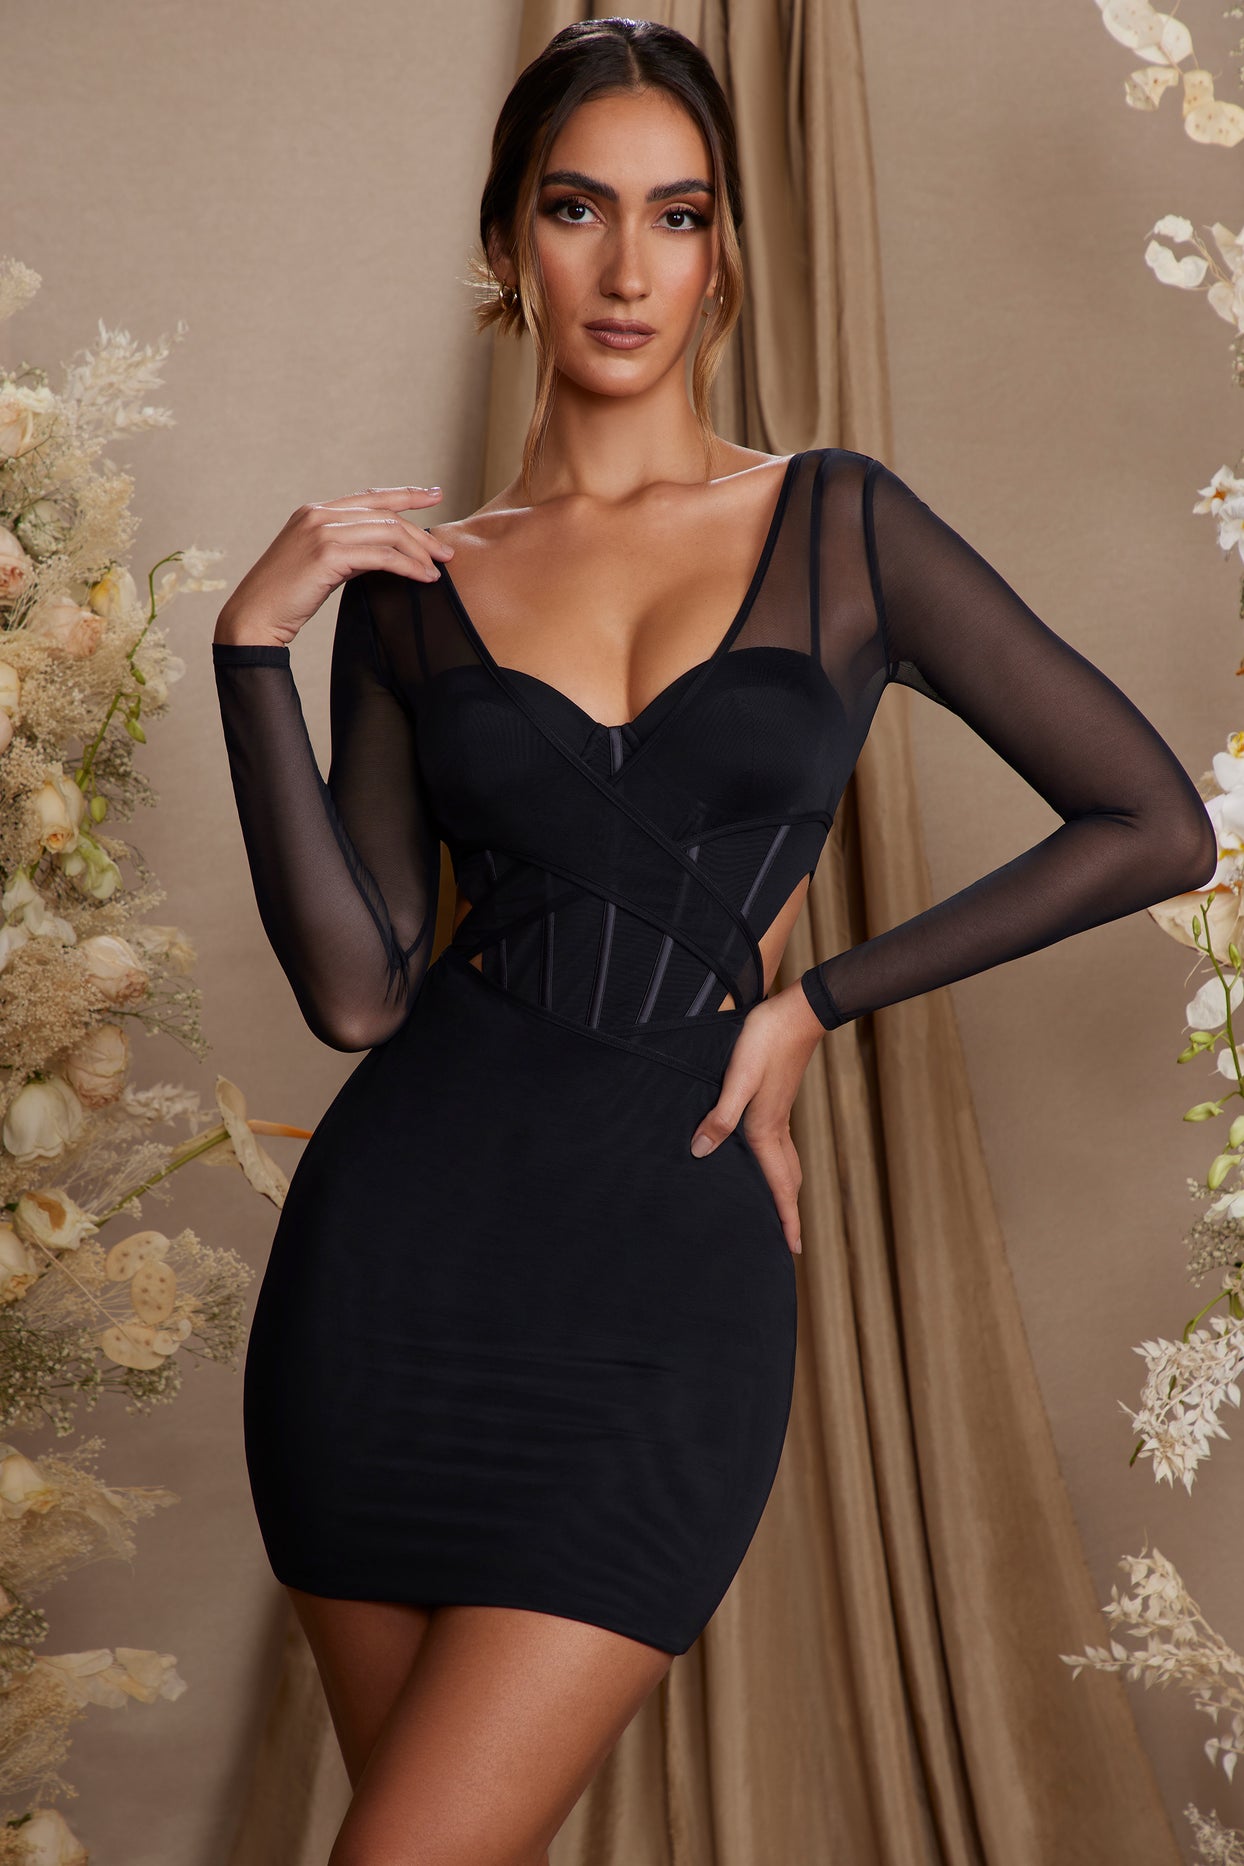 Mini-robe corset superposée à manches longues en noir